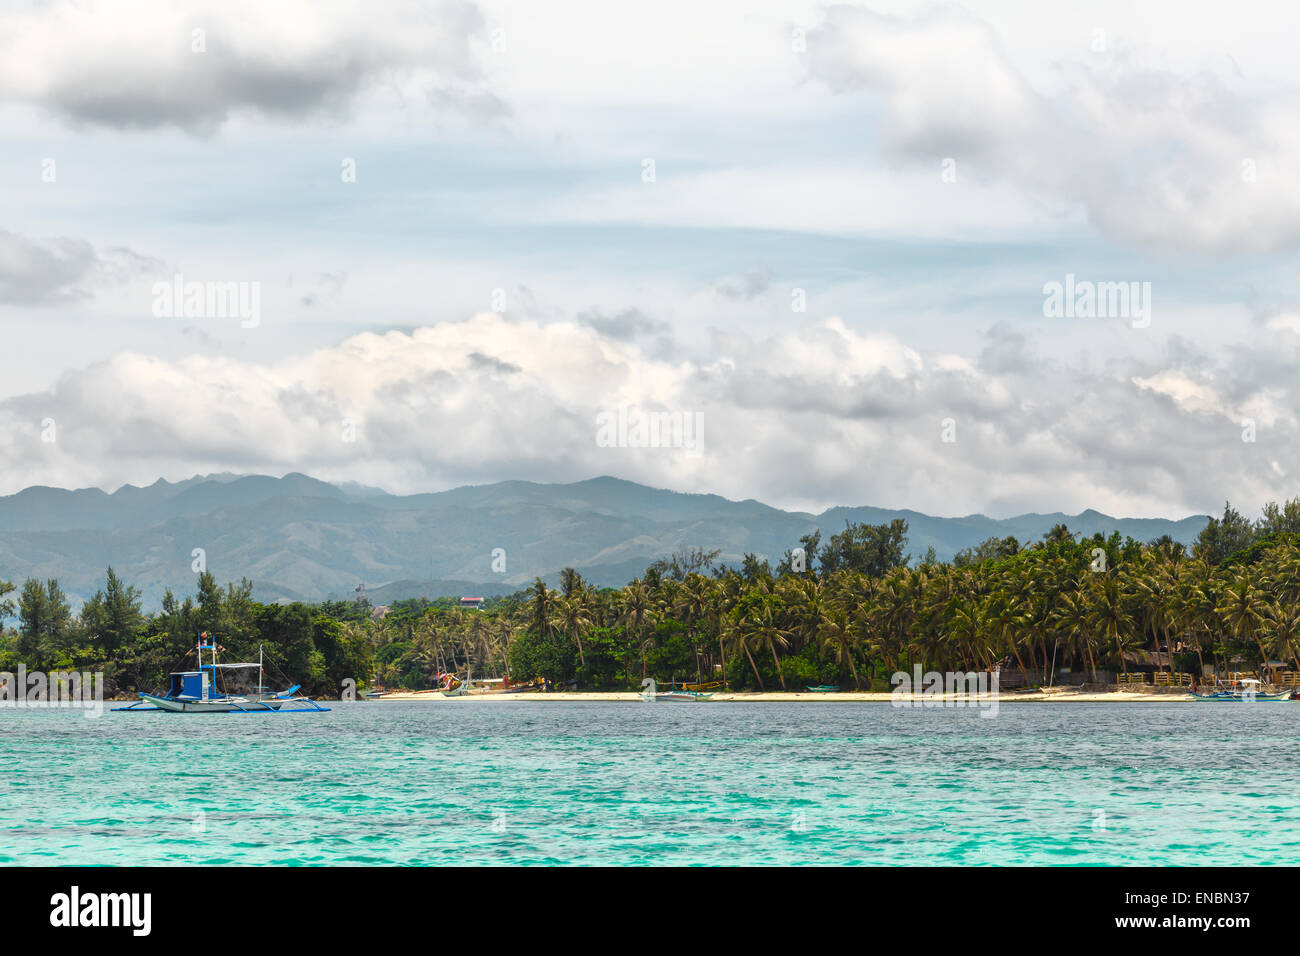 Grüne tropische Insel mit Palmen auf gelben Strand mit Steinen im blauen Meer, weißes Schiff Philippinen Boracay island Stockfoto